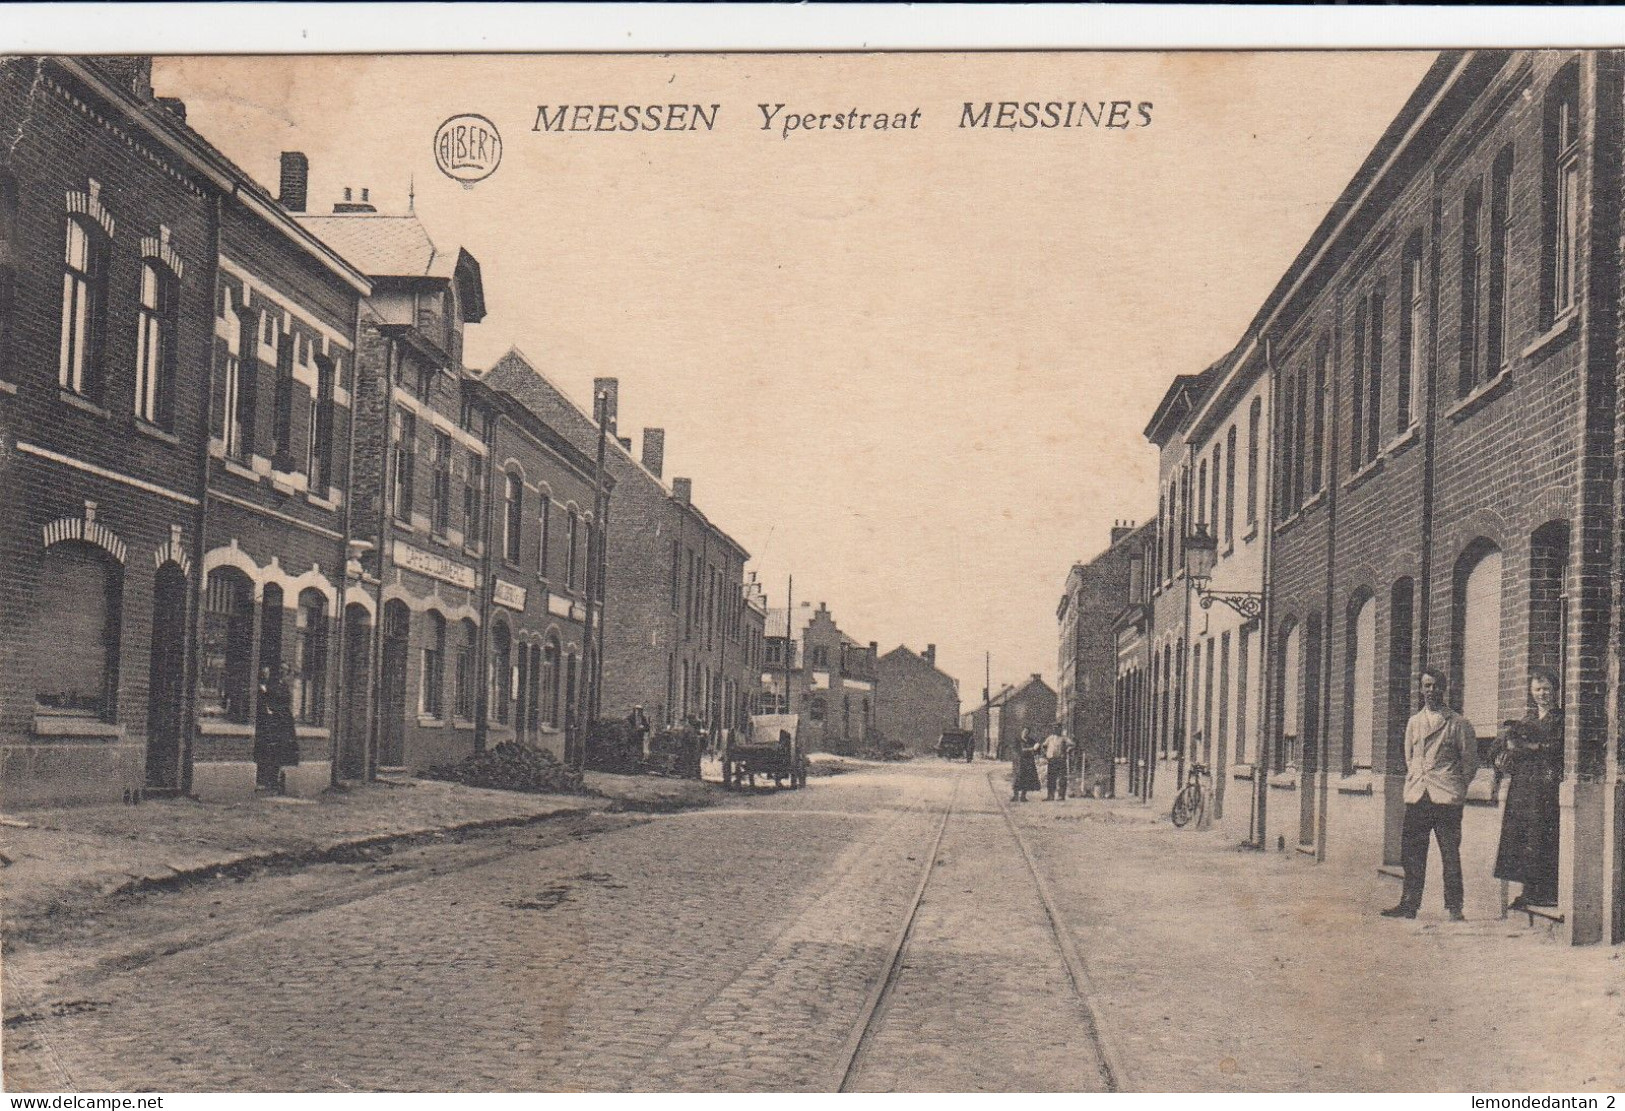 Meessen  -Yperstraat - Messines - Messines - Mesen